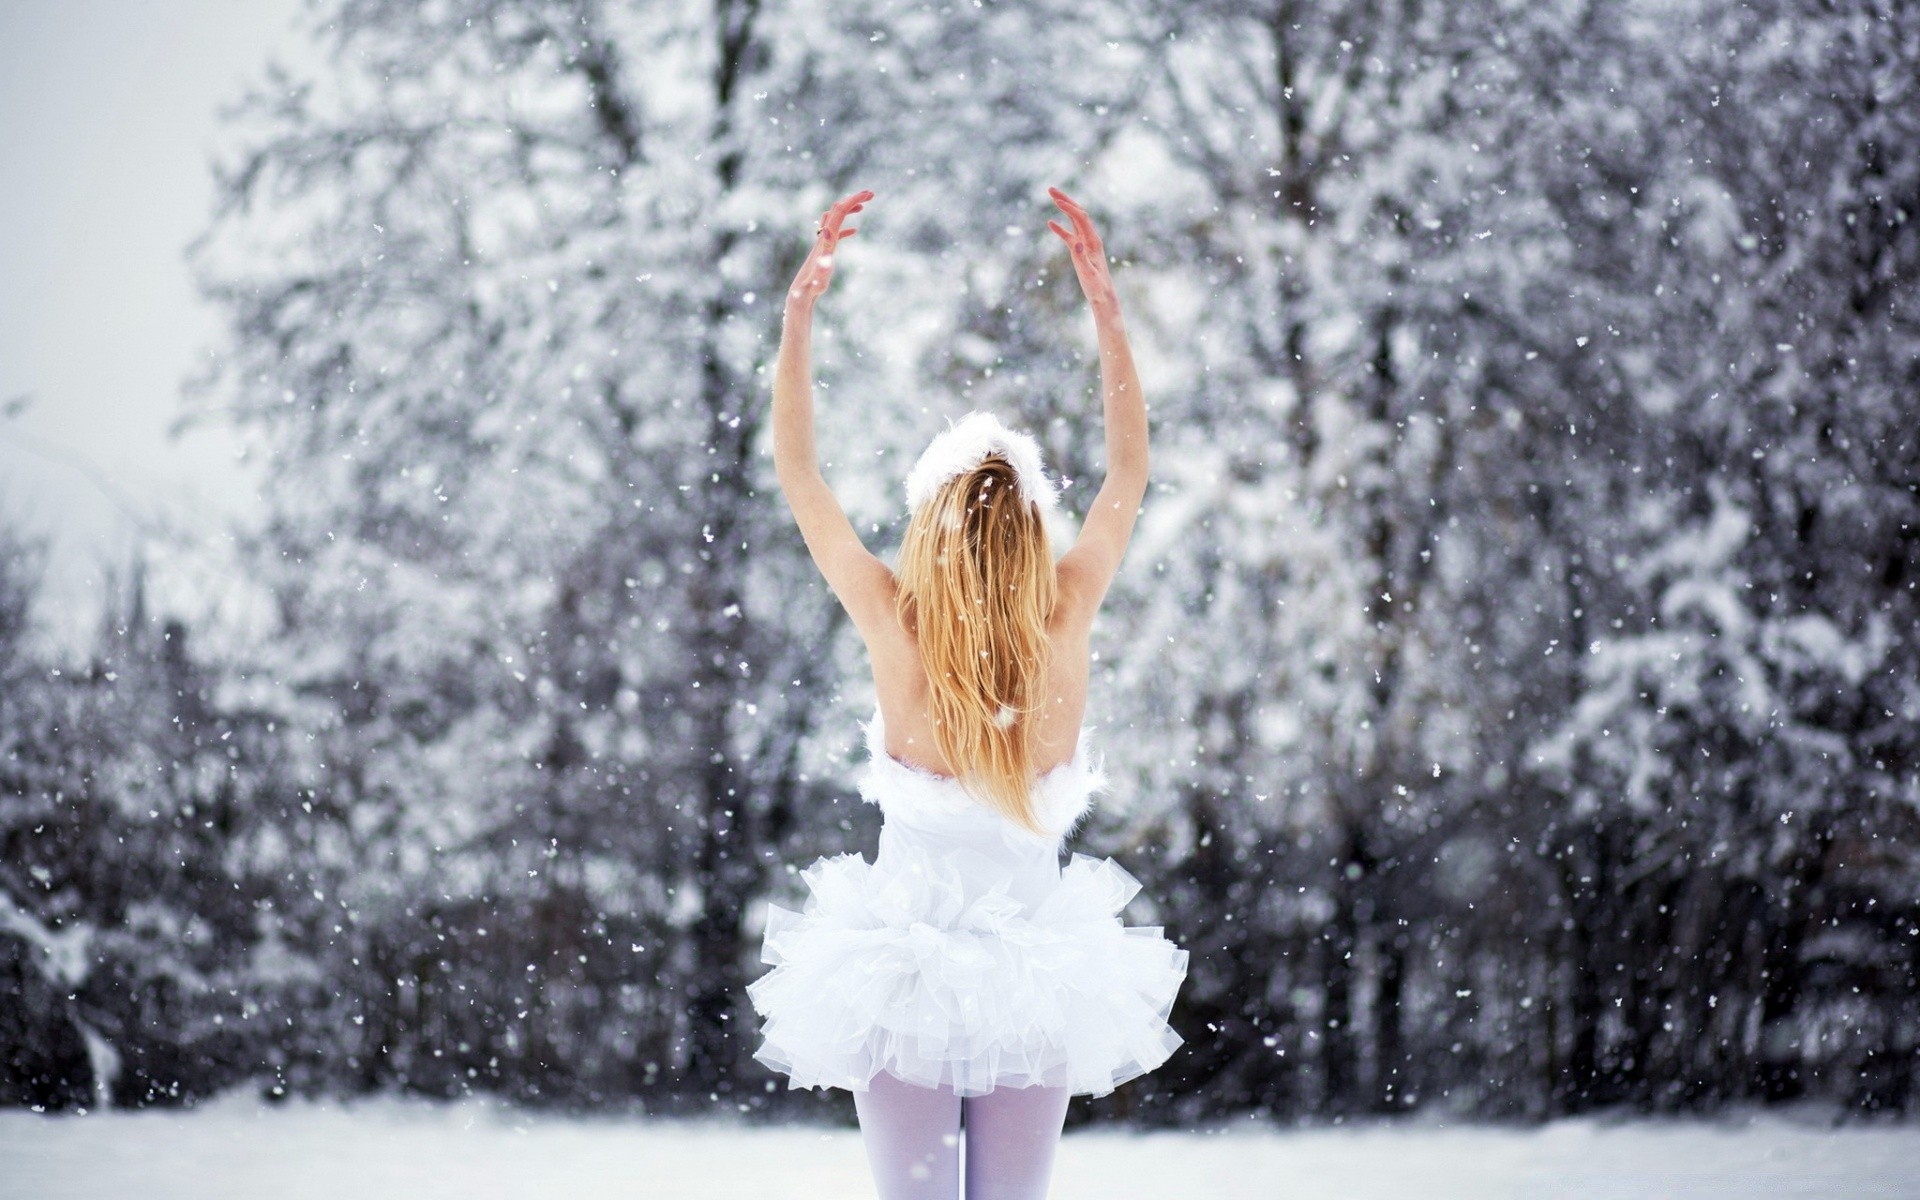 другие девушки снег зима мороз рождество снежинка холодная сезон замороженные лед дерево на открытом воздухе природа один женщина взрослый погода счастье